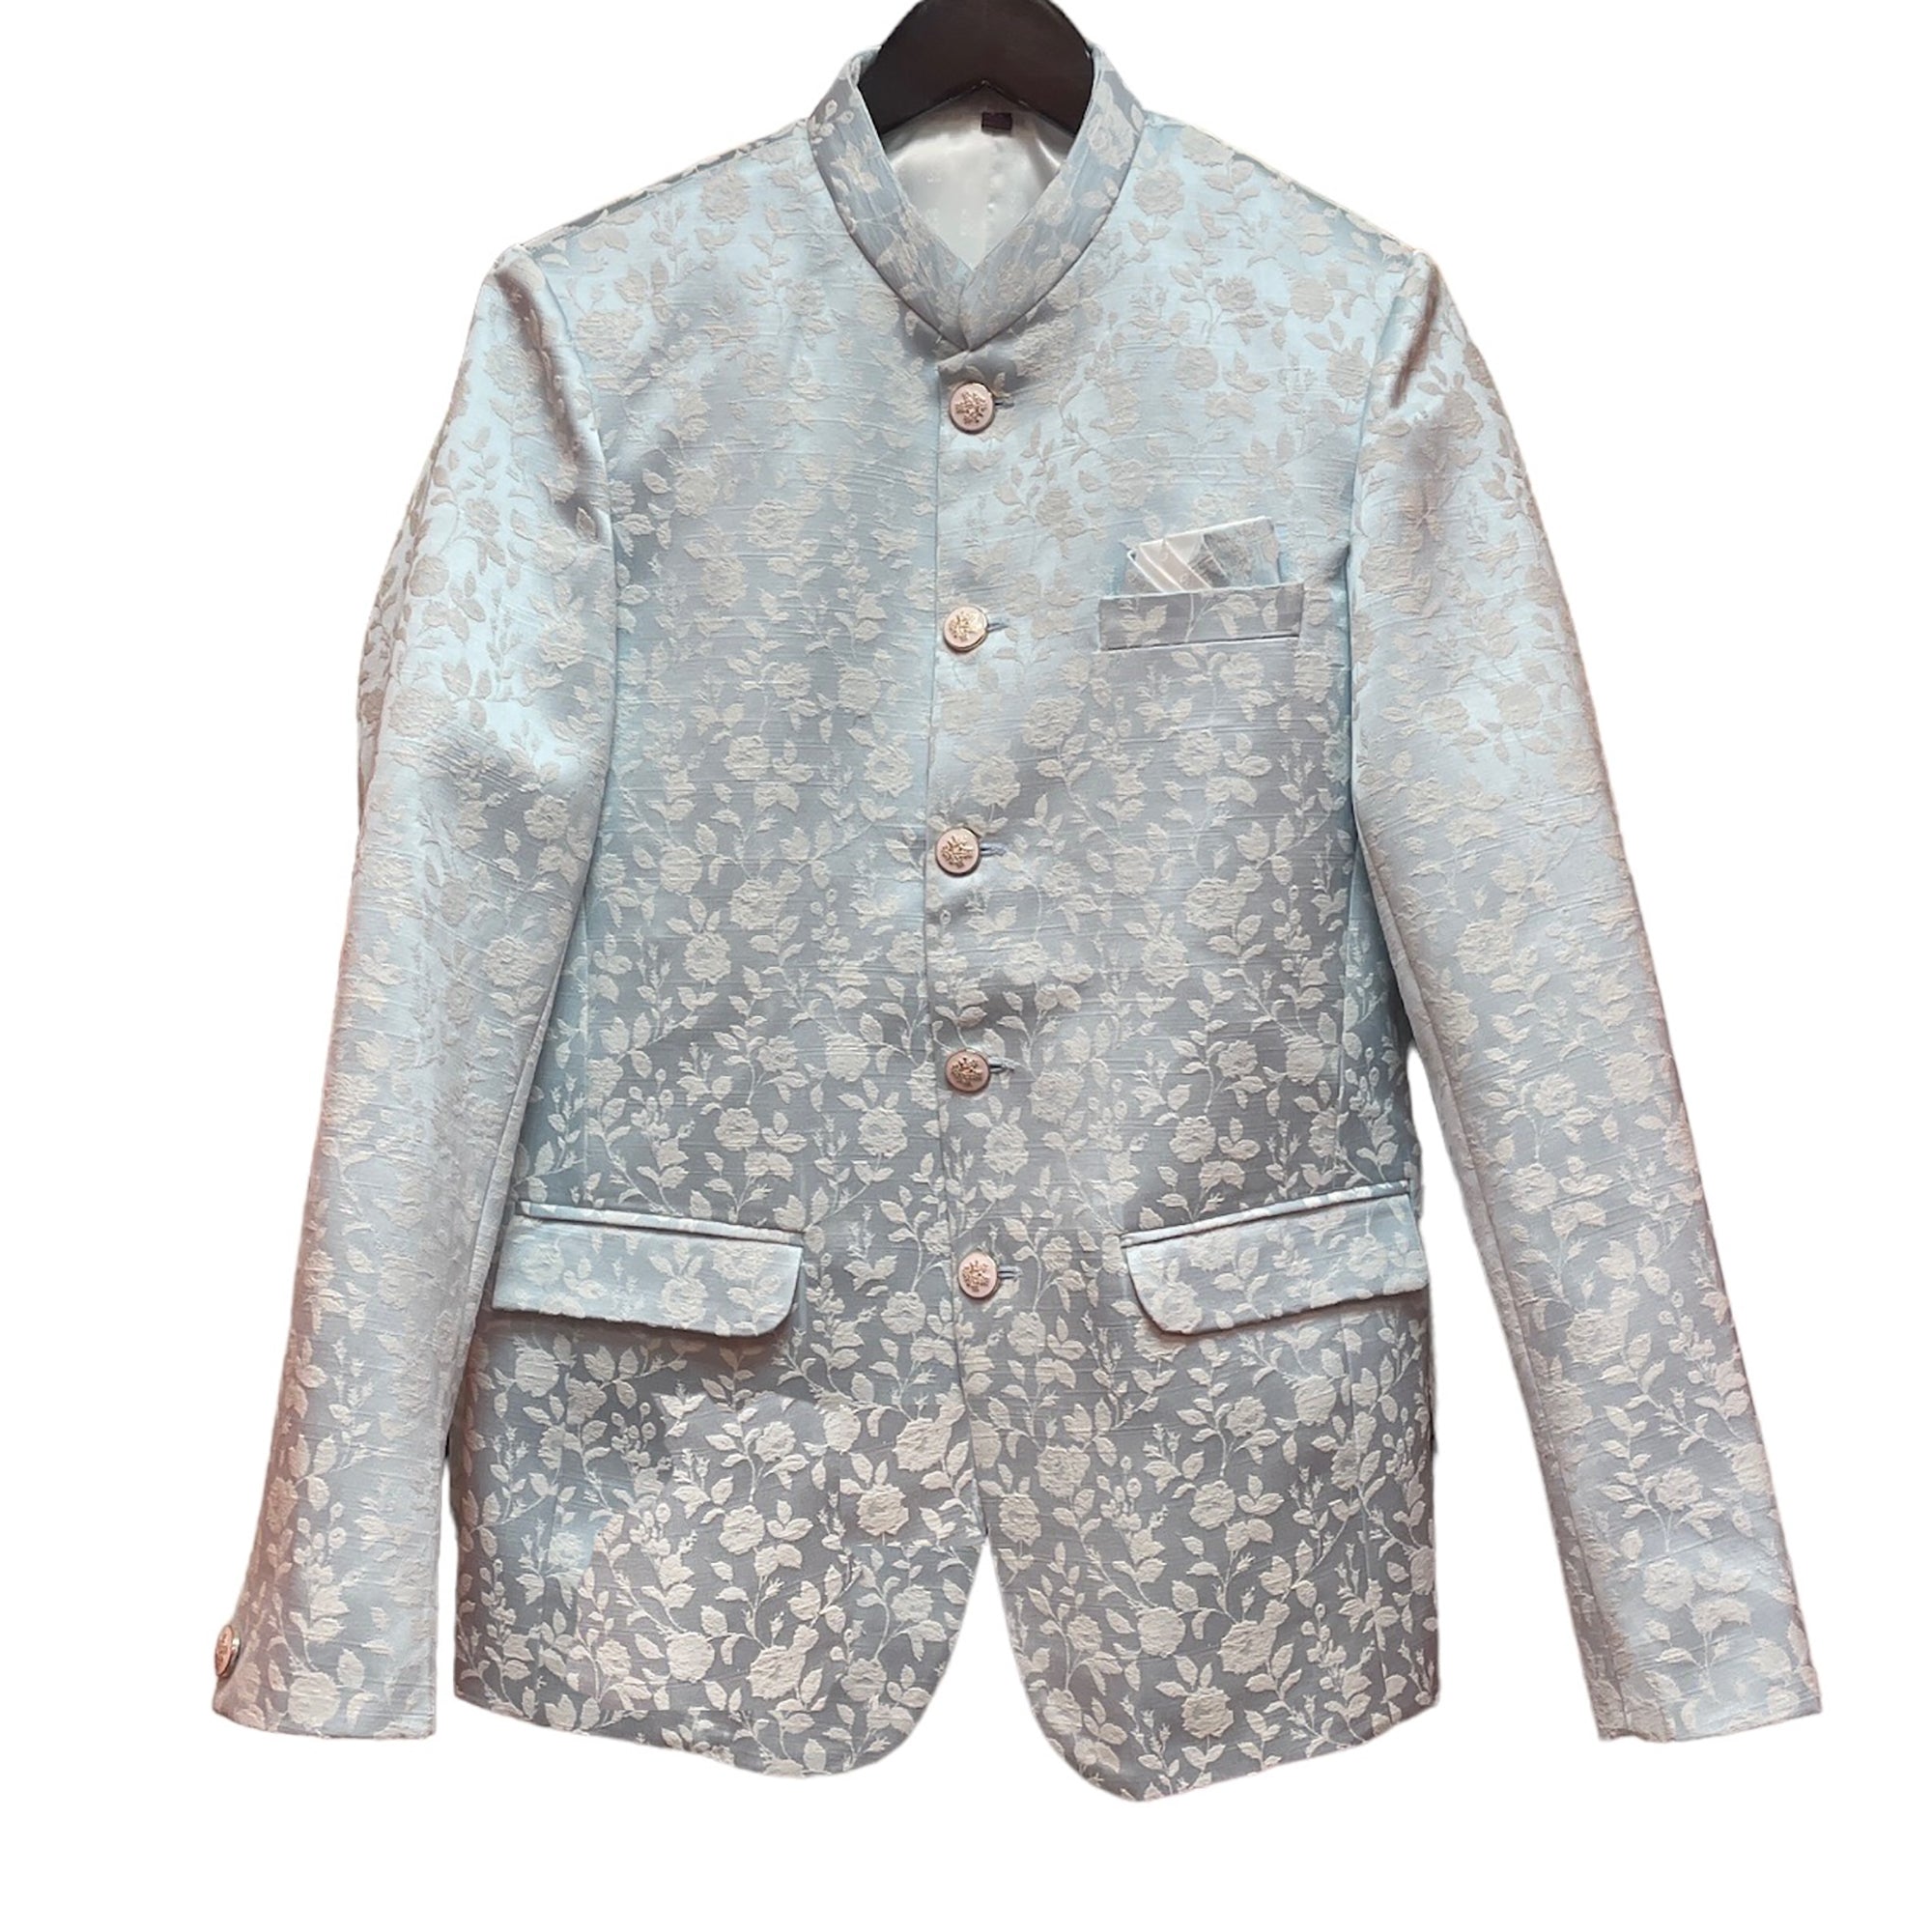 Pale Blue Floral Jodhpuri Jacket - Vintage India NYC